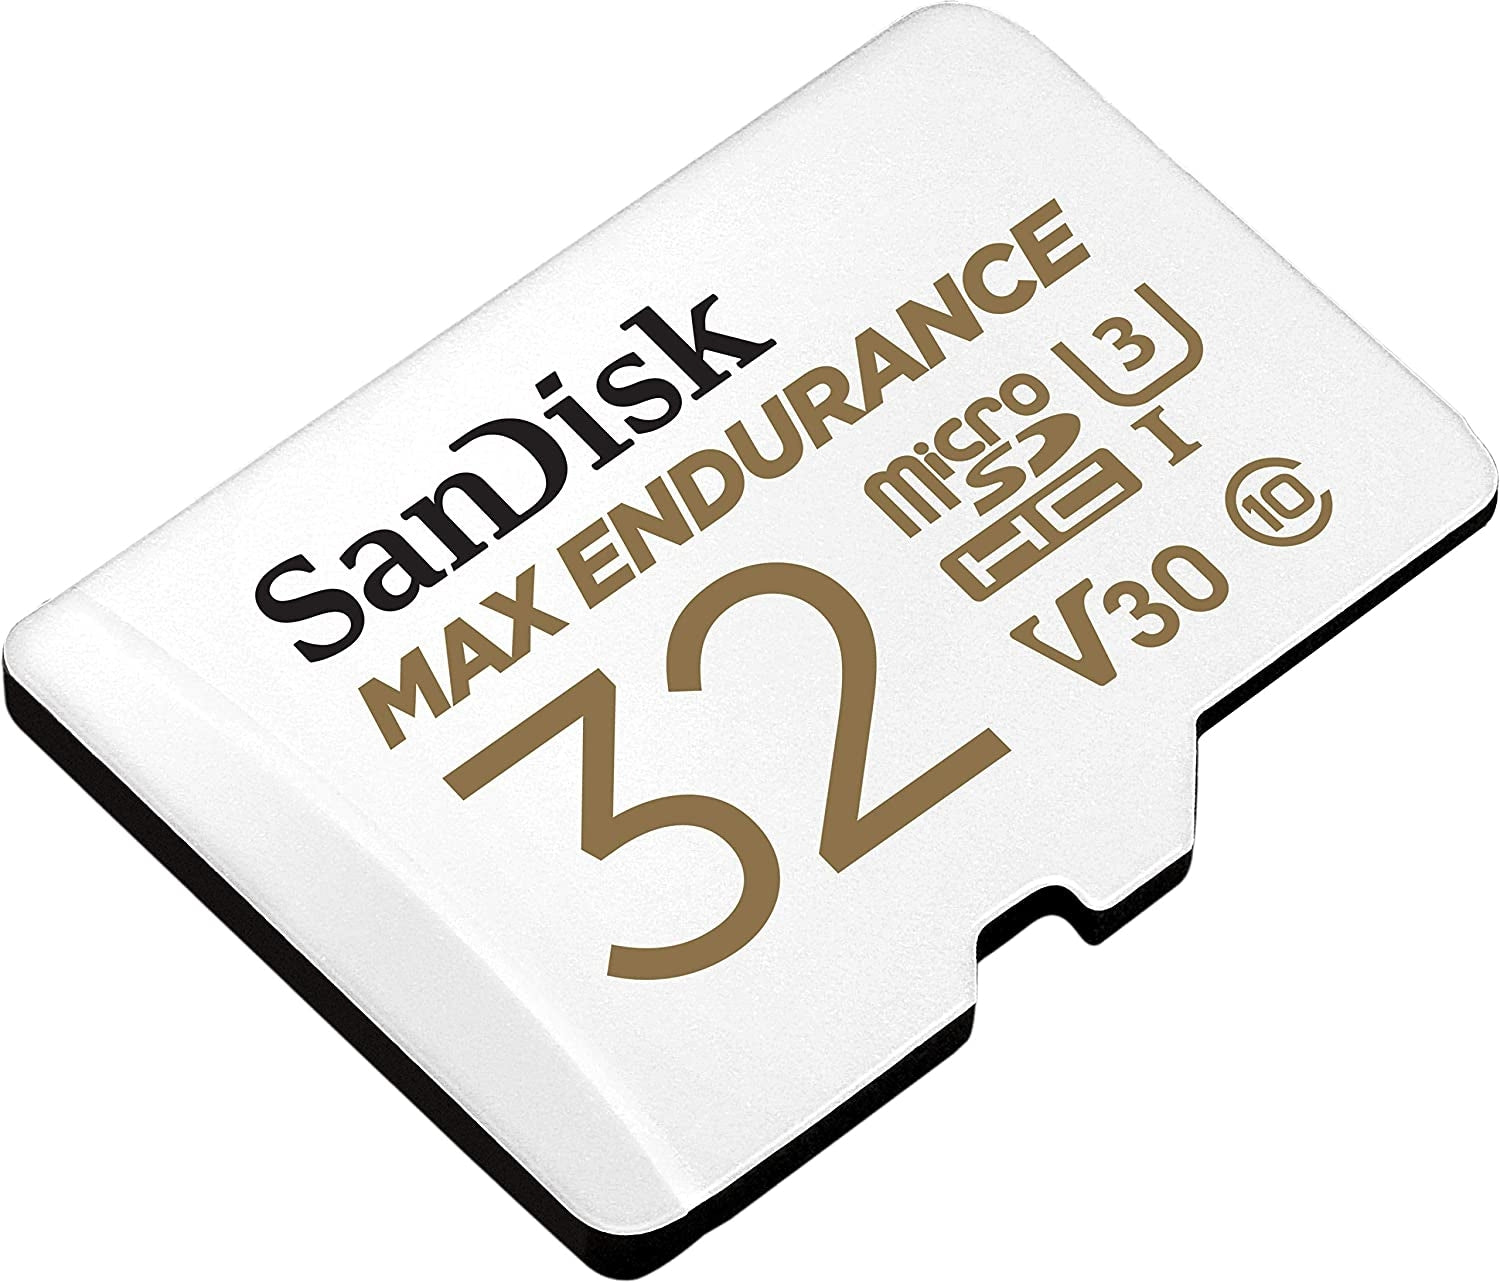 sandisk-max-endurance-microsdhc-card-sqqvr-32g-15-000-hrs-uhs-i-c10-u3-v30-100mb-s-r-40mb-s-w-sd-adaptor-sdsqqvr-032g-gn6ia